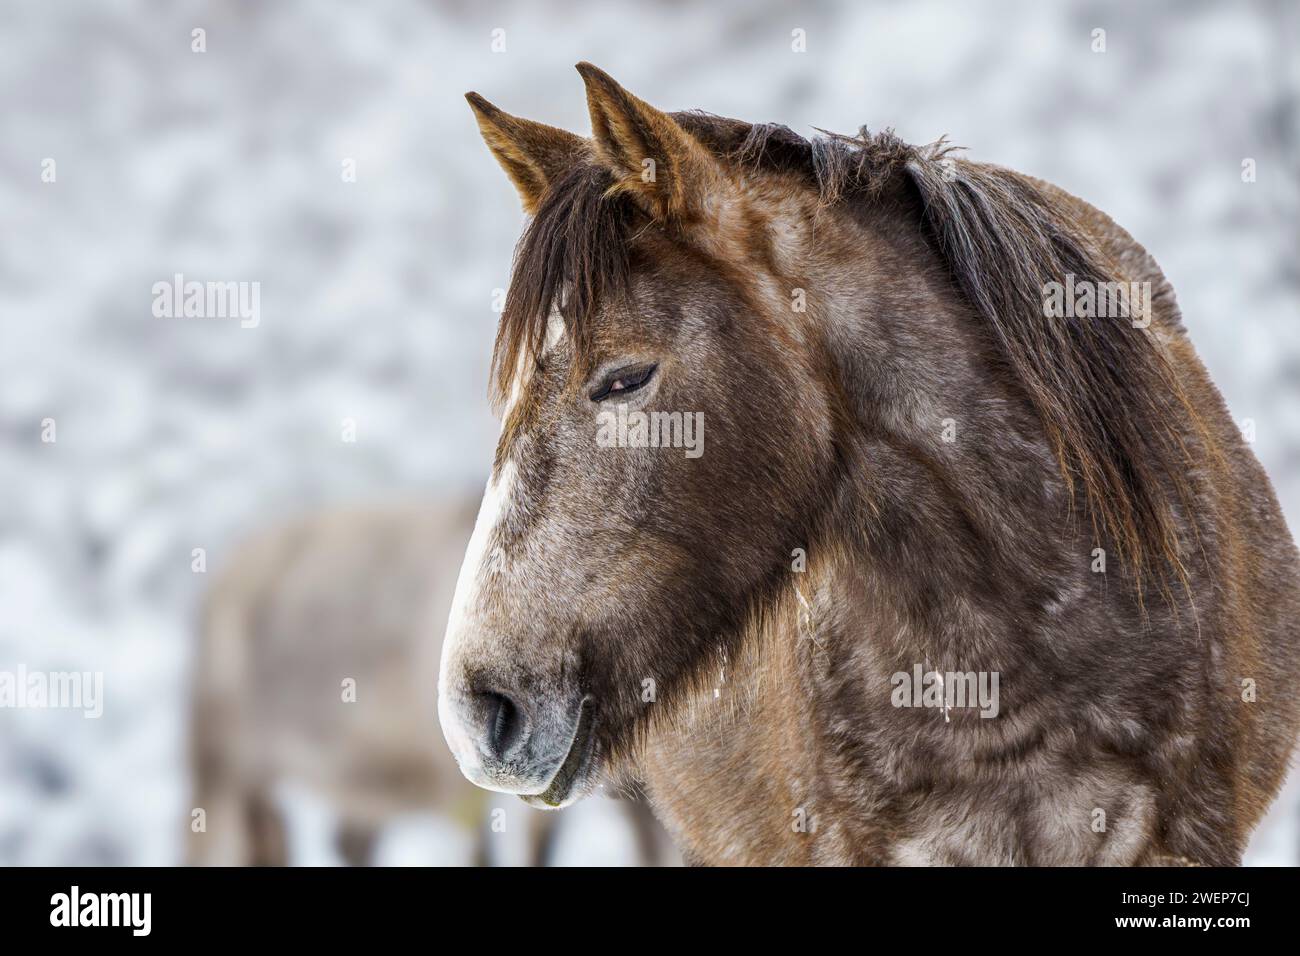 Dos caballos paseando en bosque nevado y paisaje Foto de stock